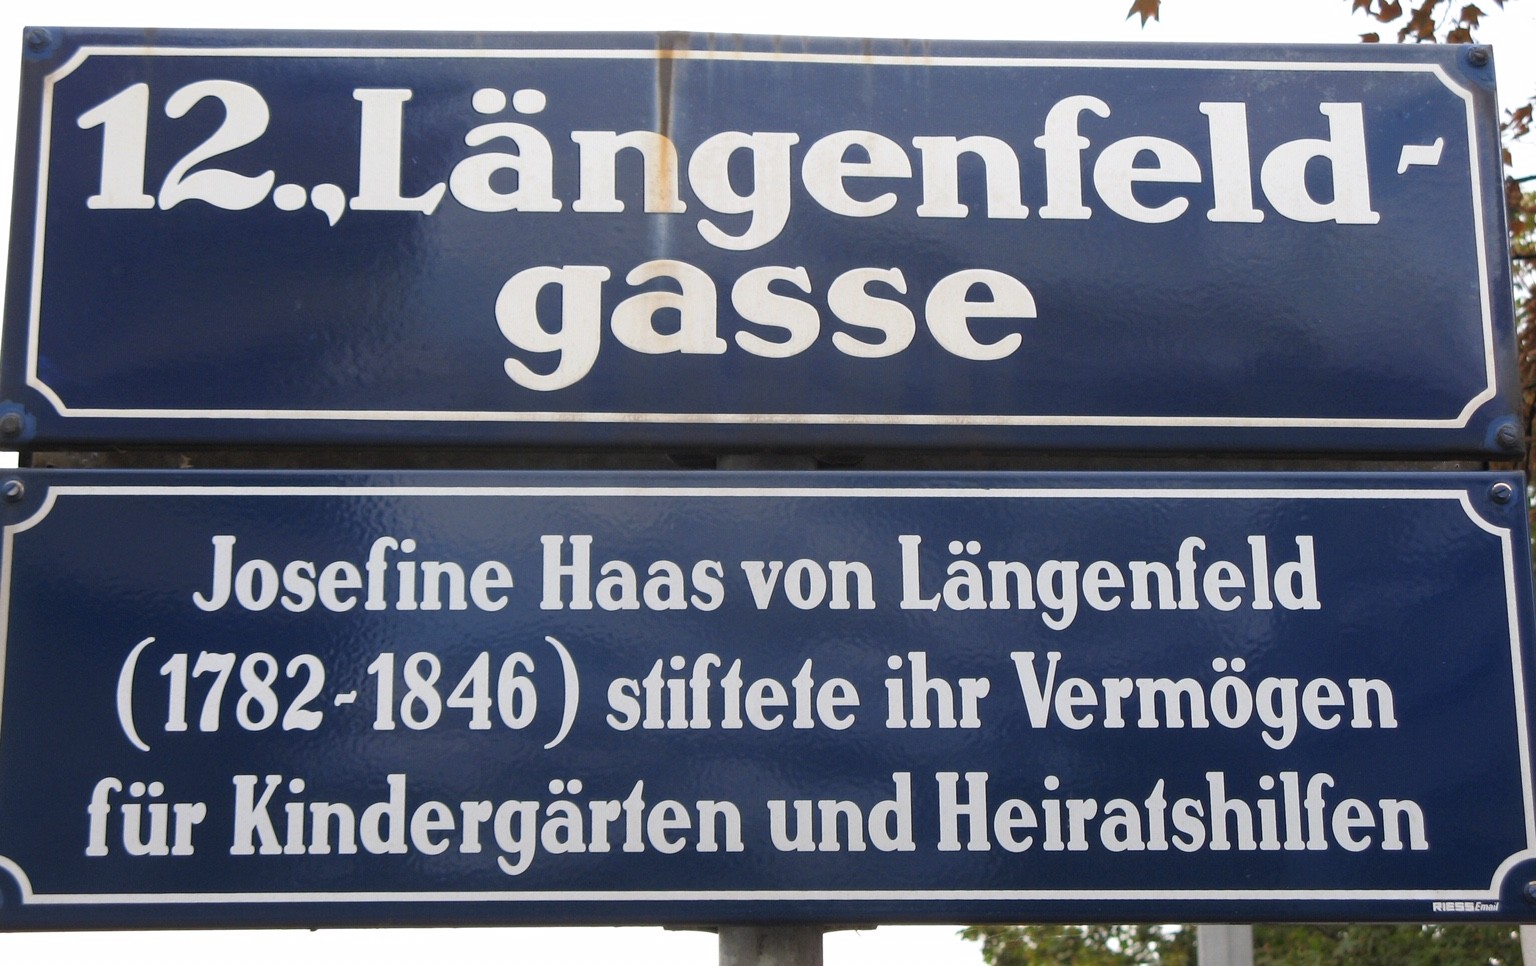 Straßennamen Wien: Die Längenfeldgasse hat ihren Namen einer wohltätigen Wienerin zu verdanken